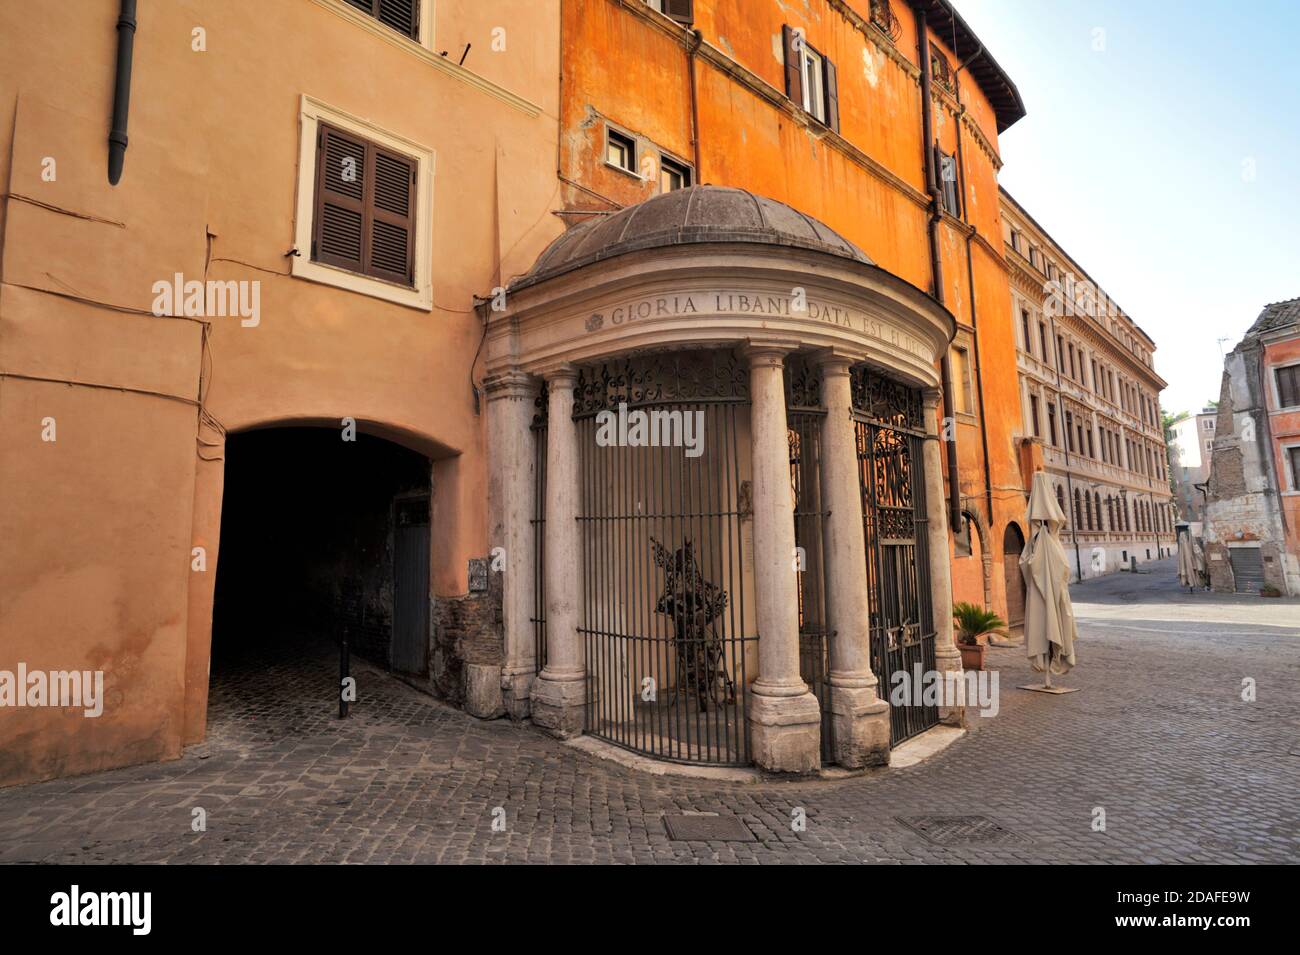 tempietto del carmelo, piazza costaguti, ghetto juif, rome, italie Banque D'Images